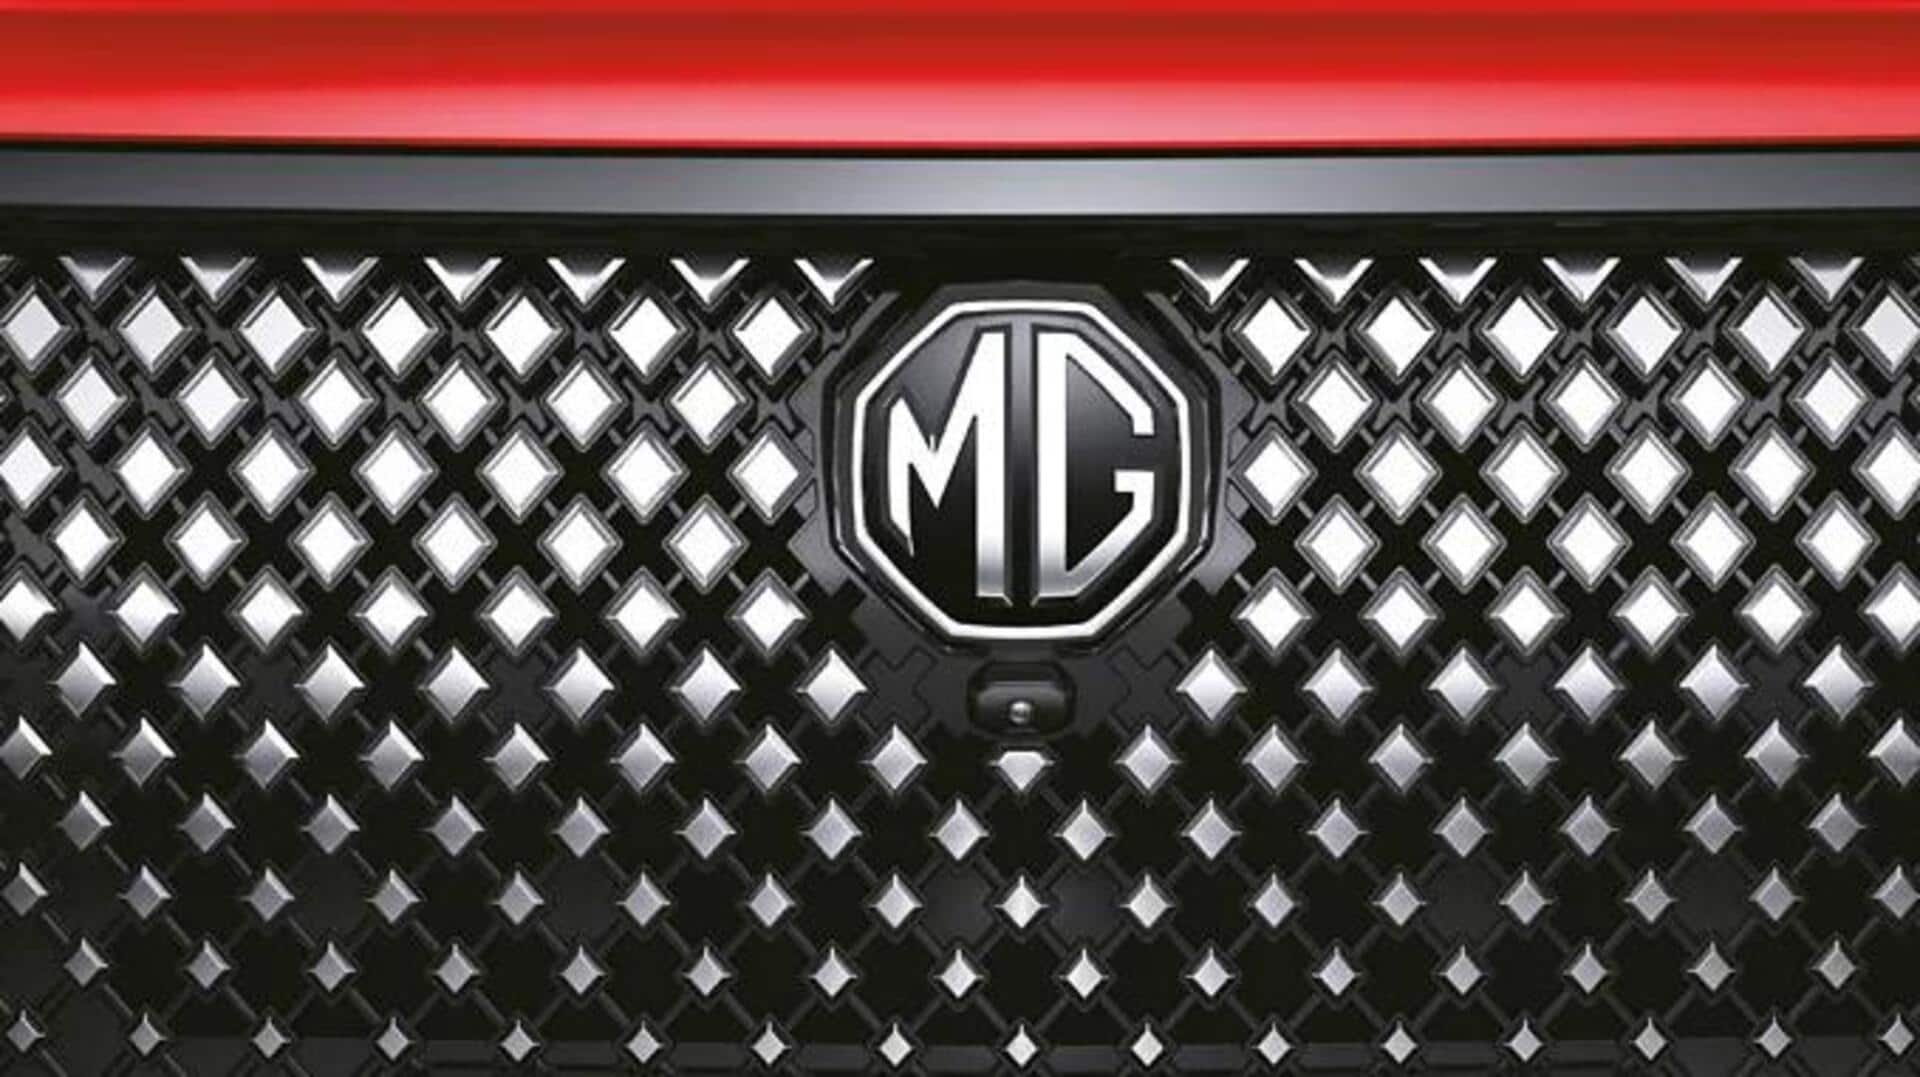 MG ने भारत में एक्सेलर EV नाम कराया ट्रेडमार्क, इलेक्ट्रिक SUV के लिए होगा इस्तेमाल 